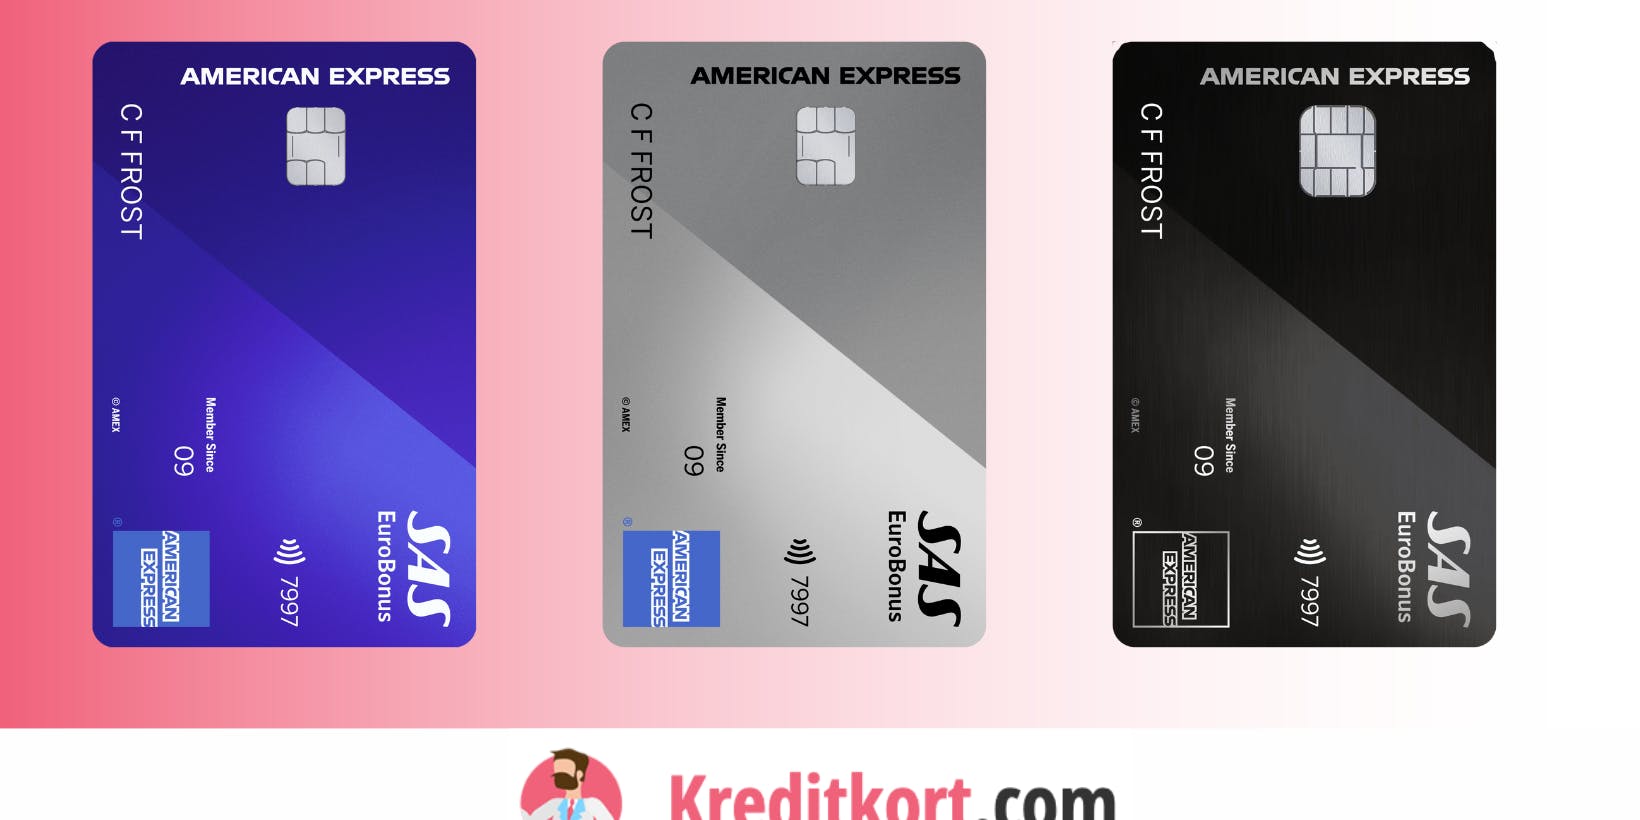 Ny design och högre avgift på Amex premiumkort